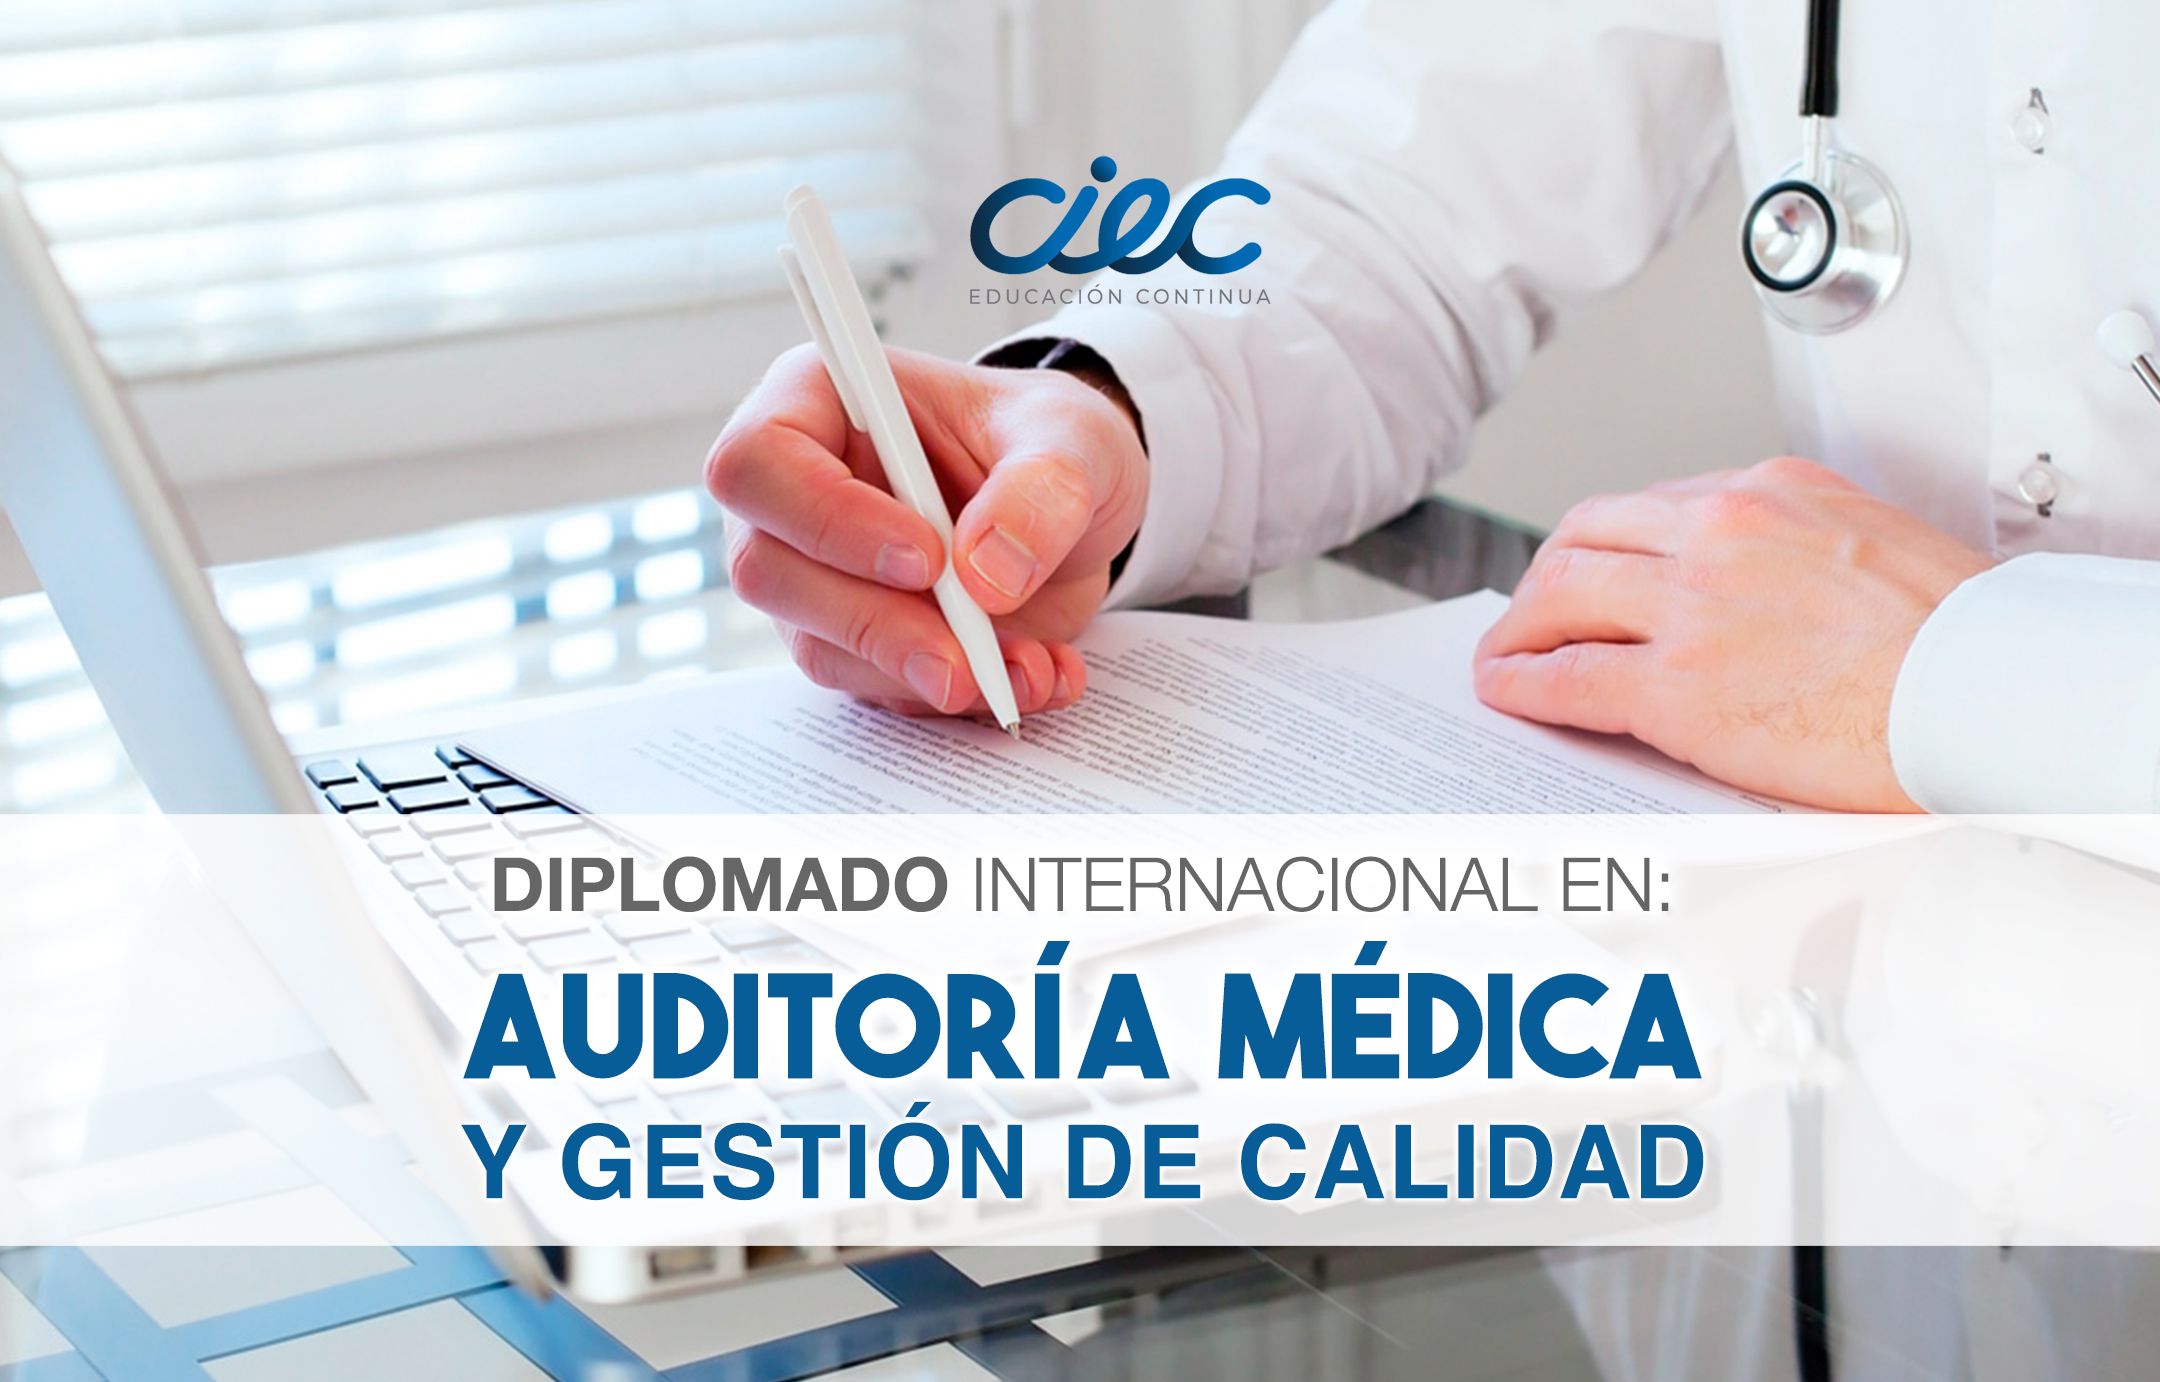 DIPLOMADO INTERNACIONAL EN AUDITORIA MEDICA Y GESTIÓN DE CALIDAD